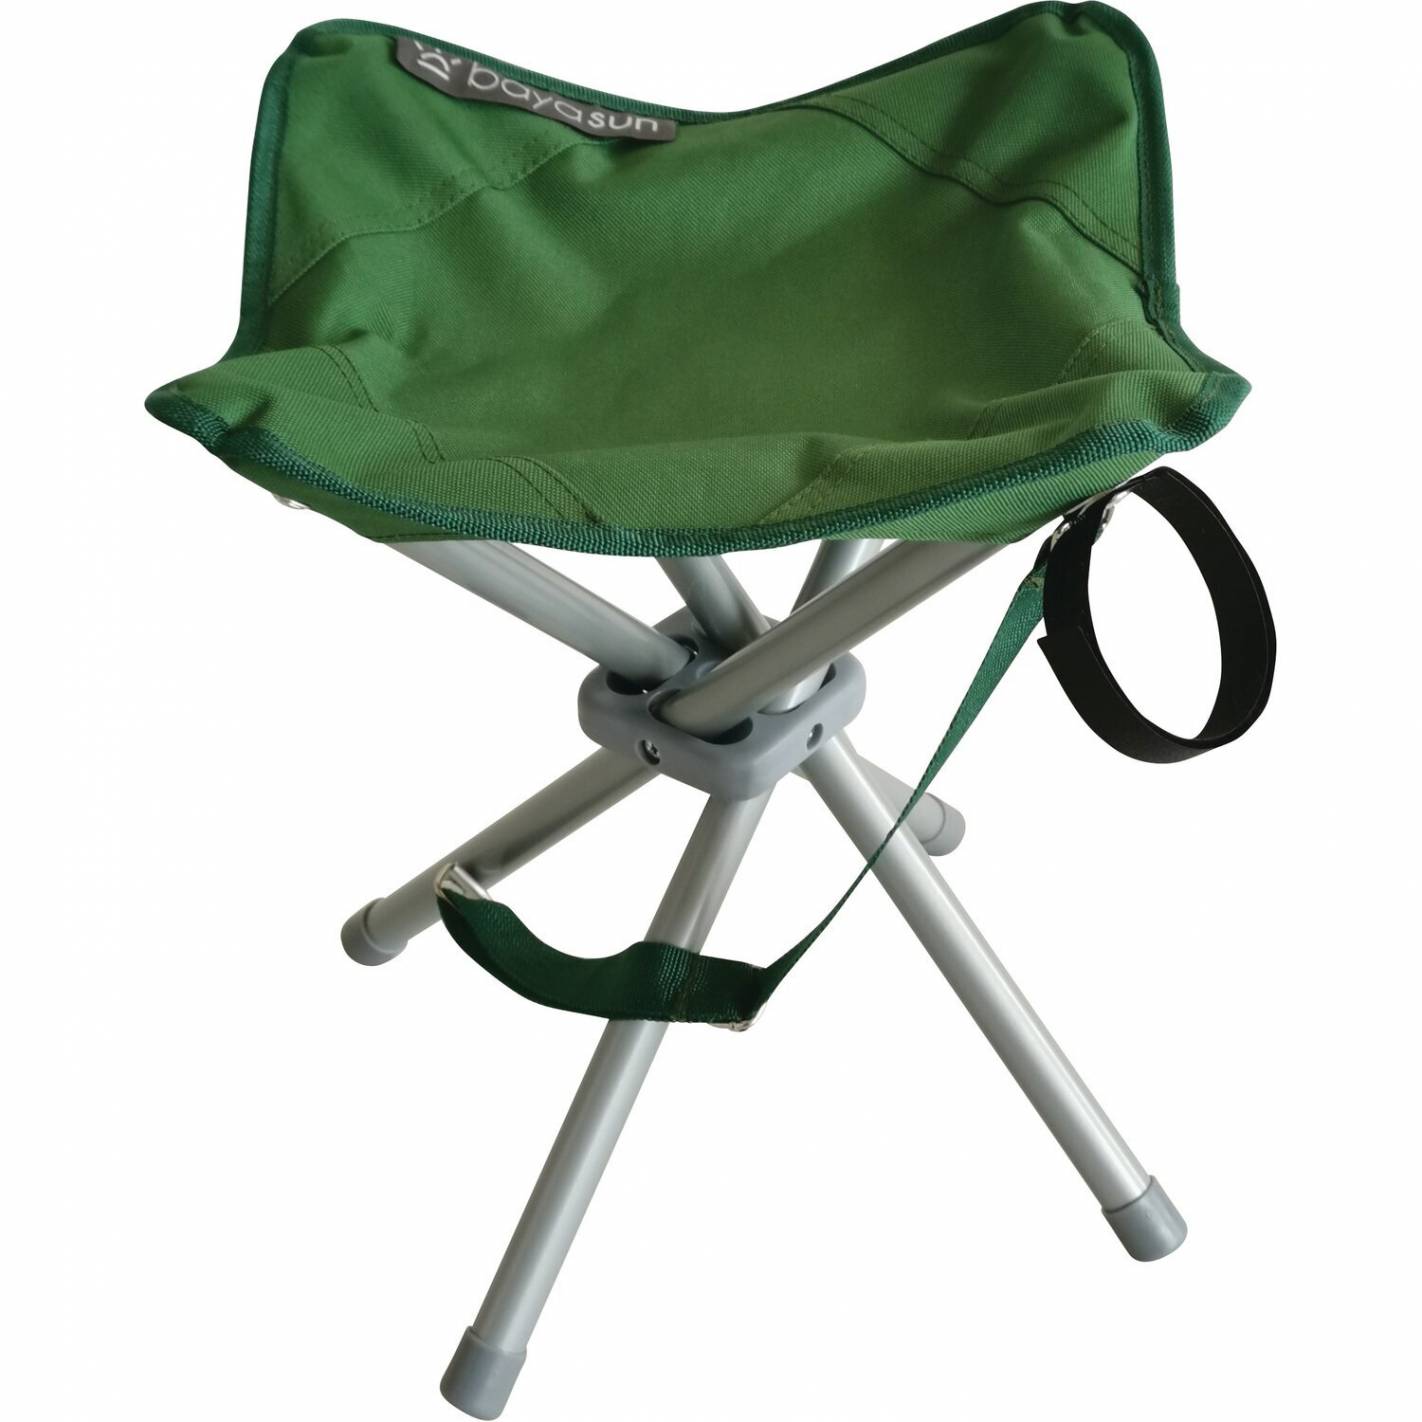 Tabouret Pliant de Camping Mini Tabouret Chaise de Camping Siege